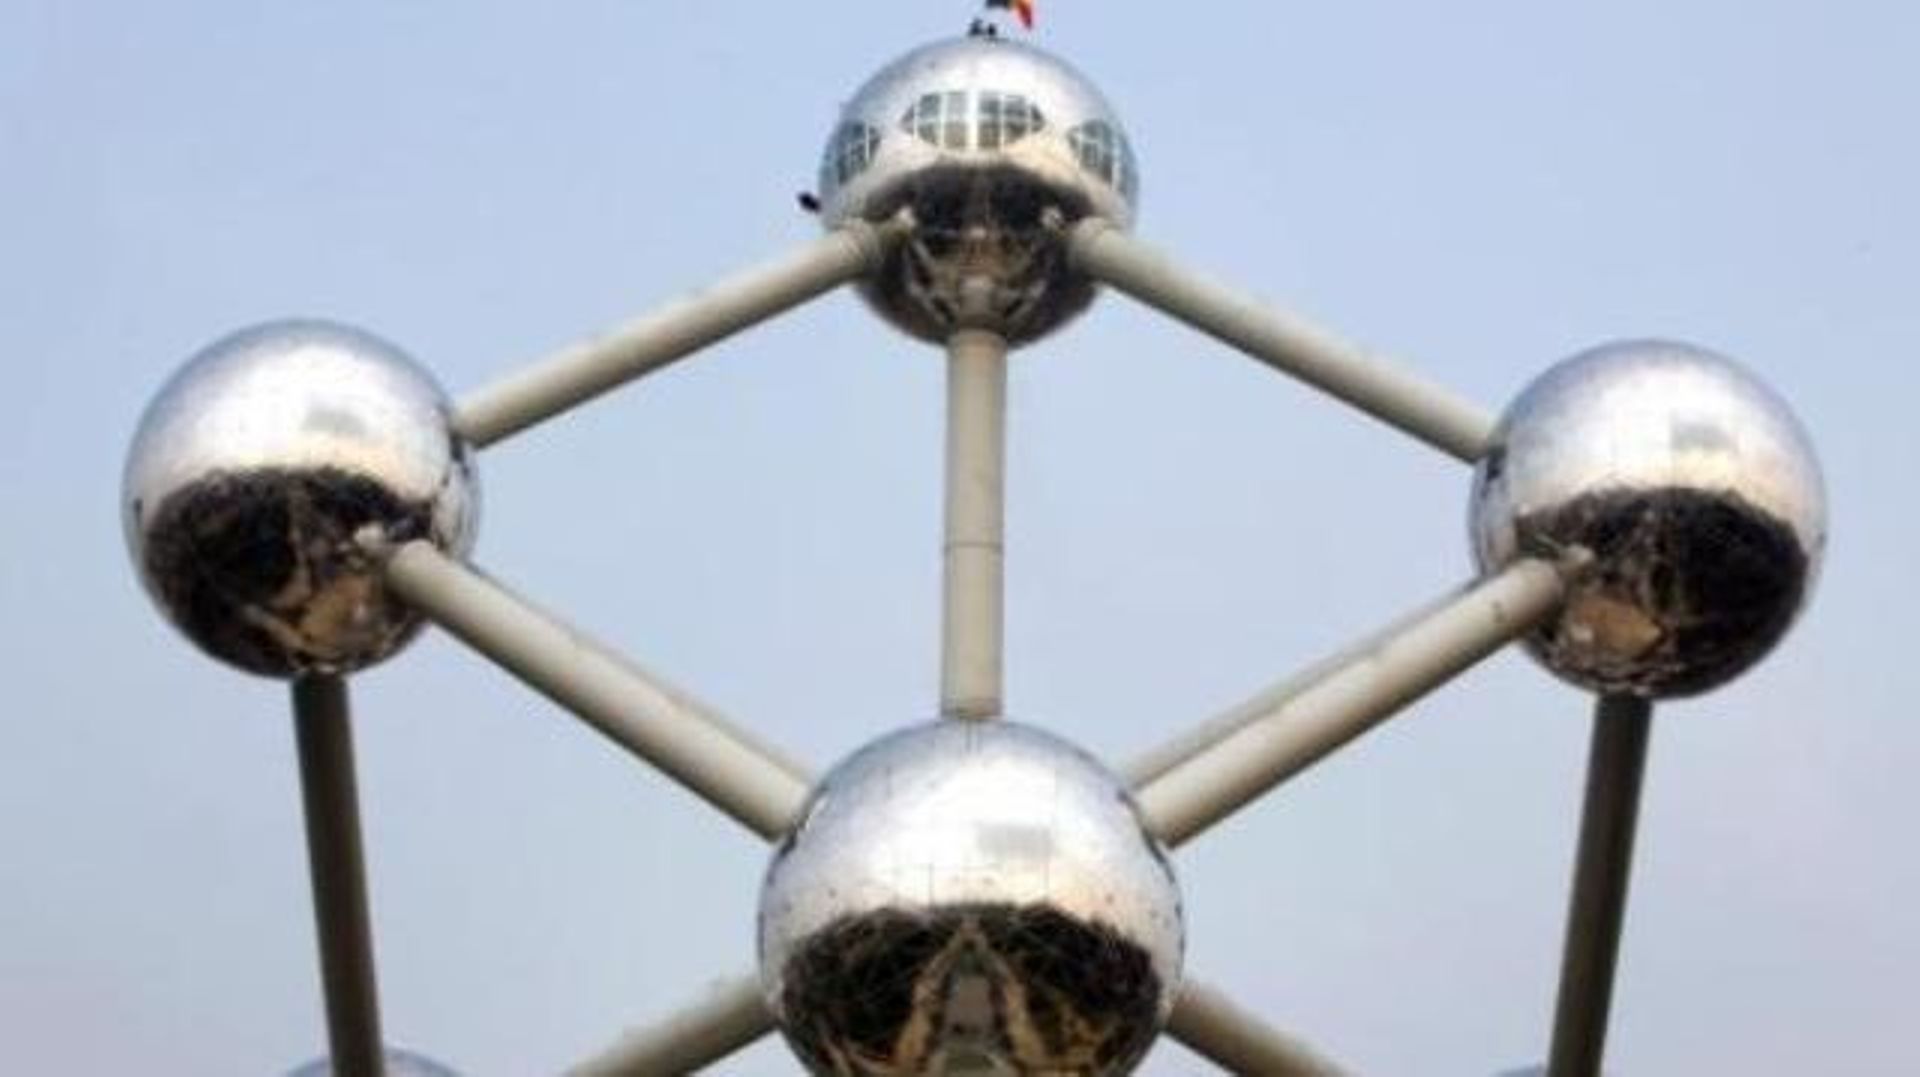 Sécurité renforcée à l'Atomium en raison de menaces terroristes